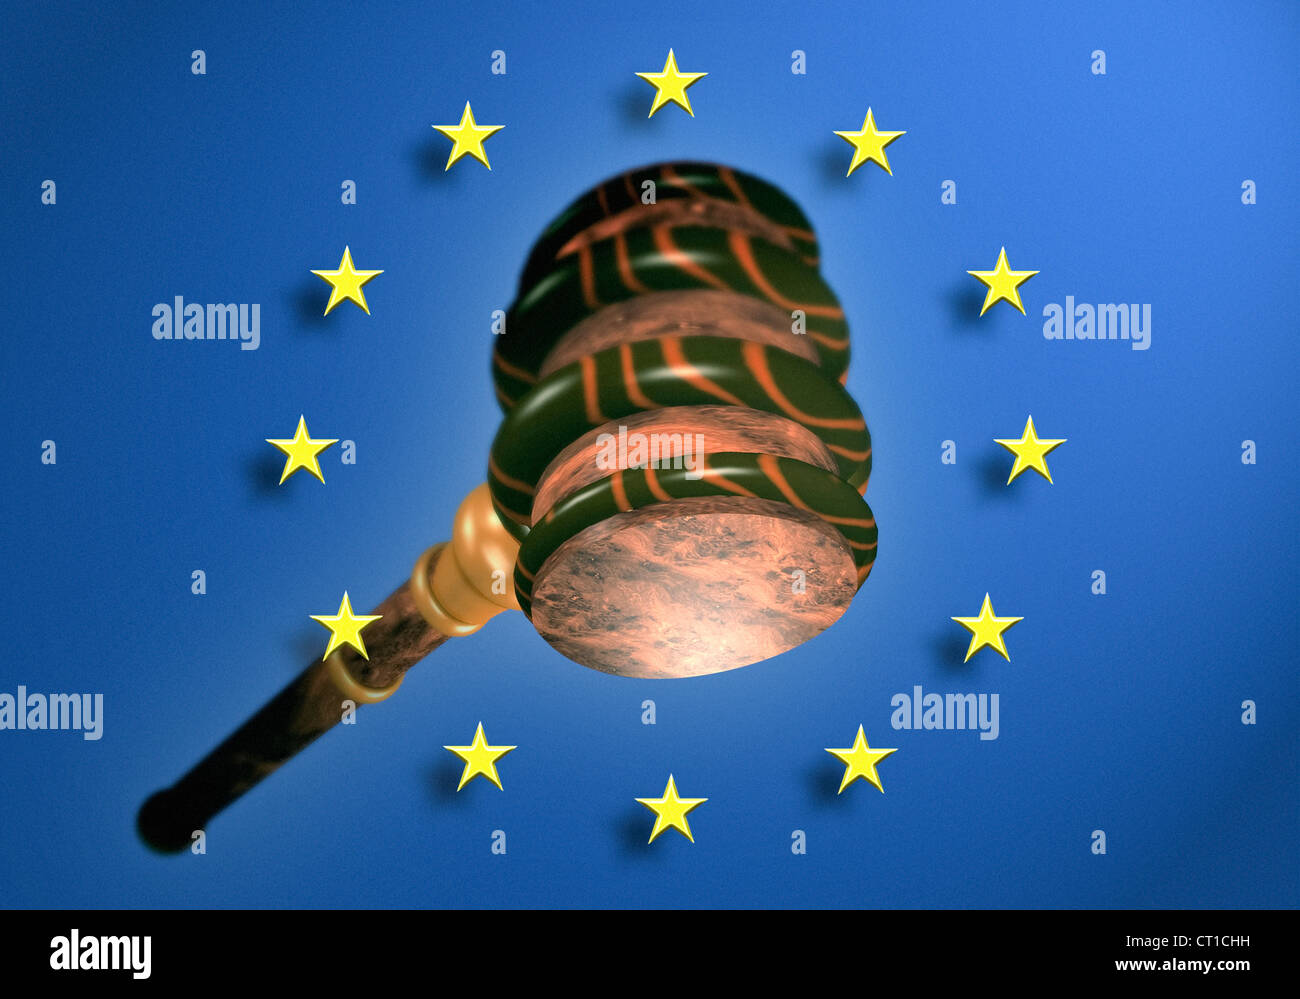 Martello o aste martello con bandiera europea - Martello Richter oder vor Auktionshammer Europa Fahne Foto Stock